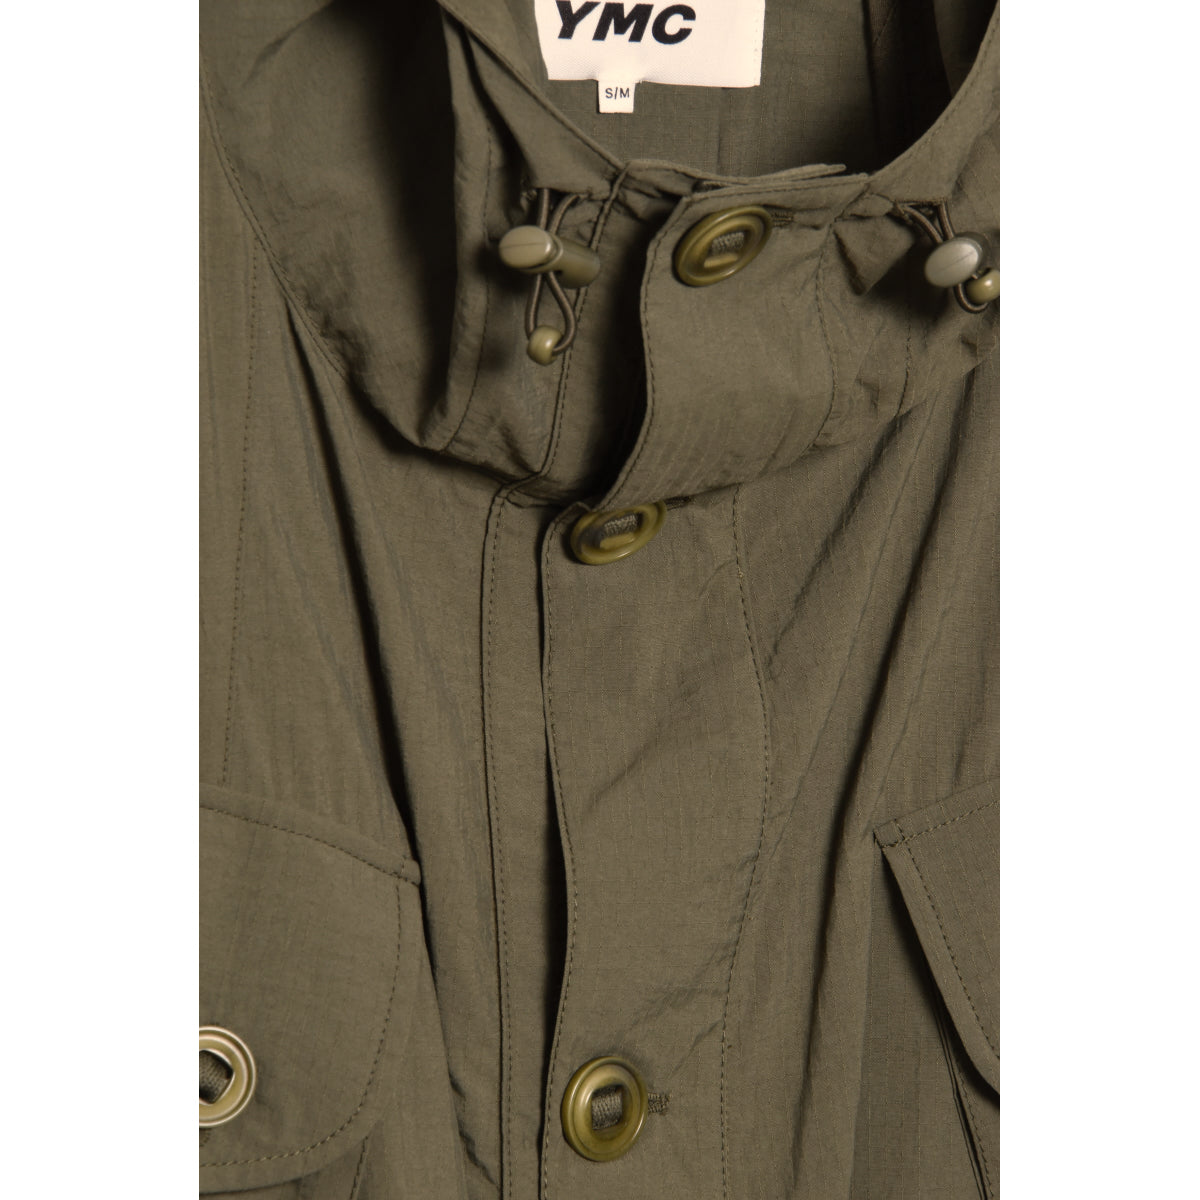 YMC Pala Poncho Hooded Coat olive